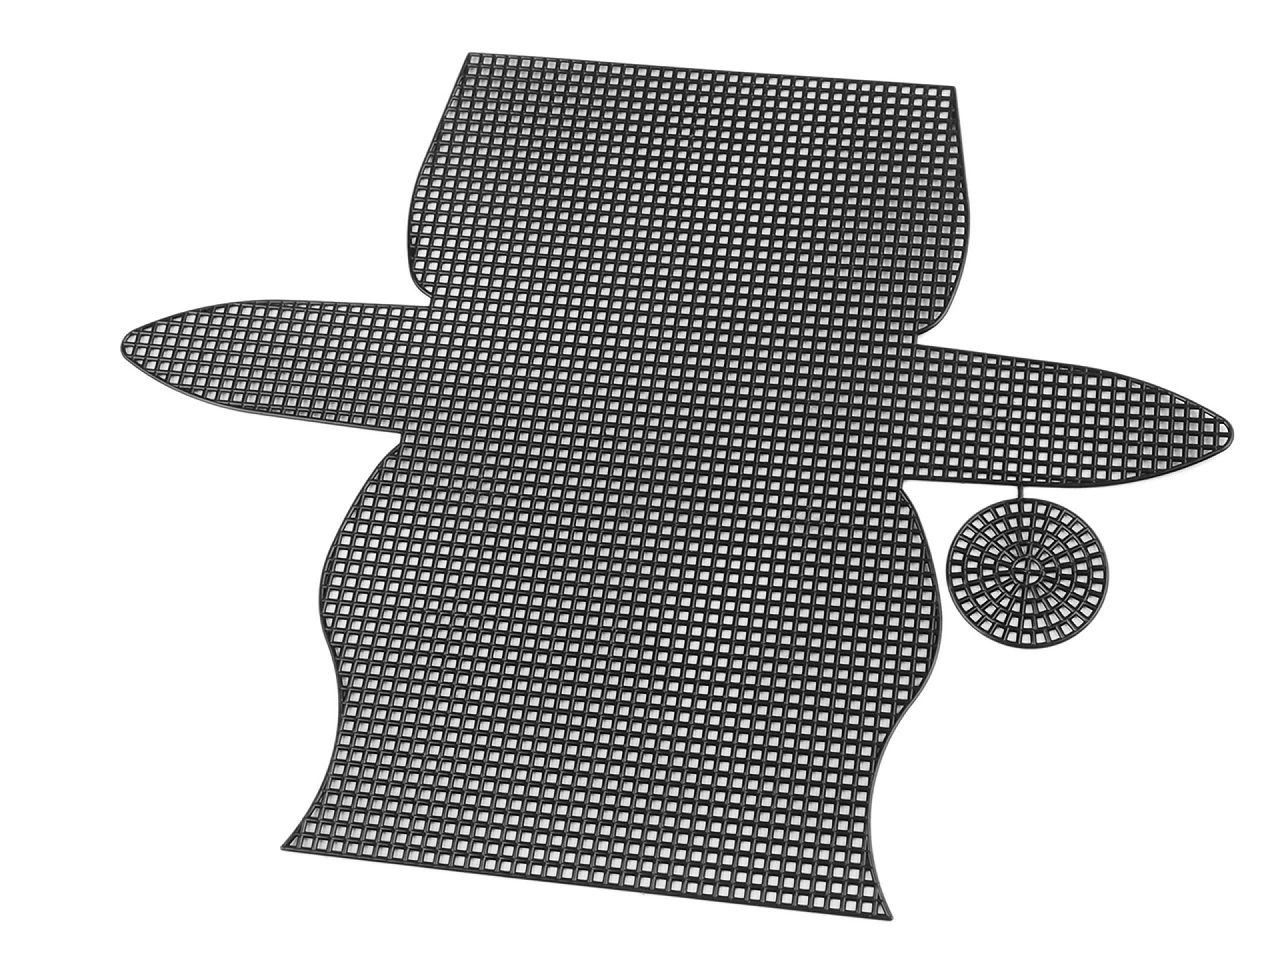 Műanyag kanava hímzés, táskakészítés - 15 x 7,5 x 4 cm - fekete